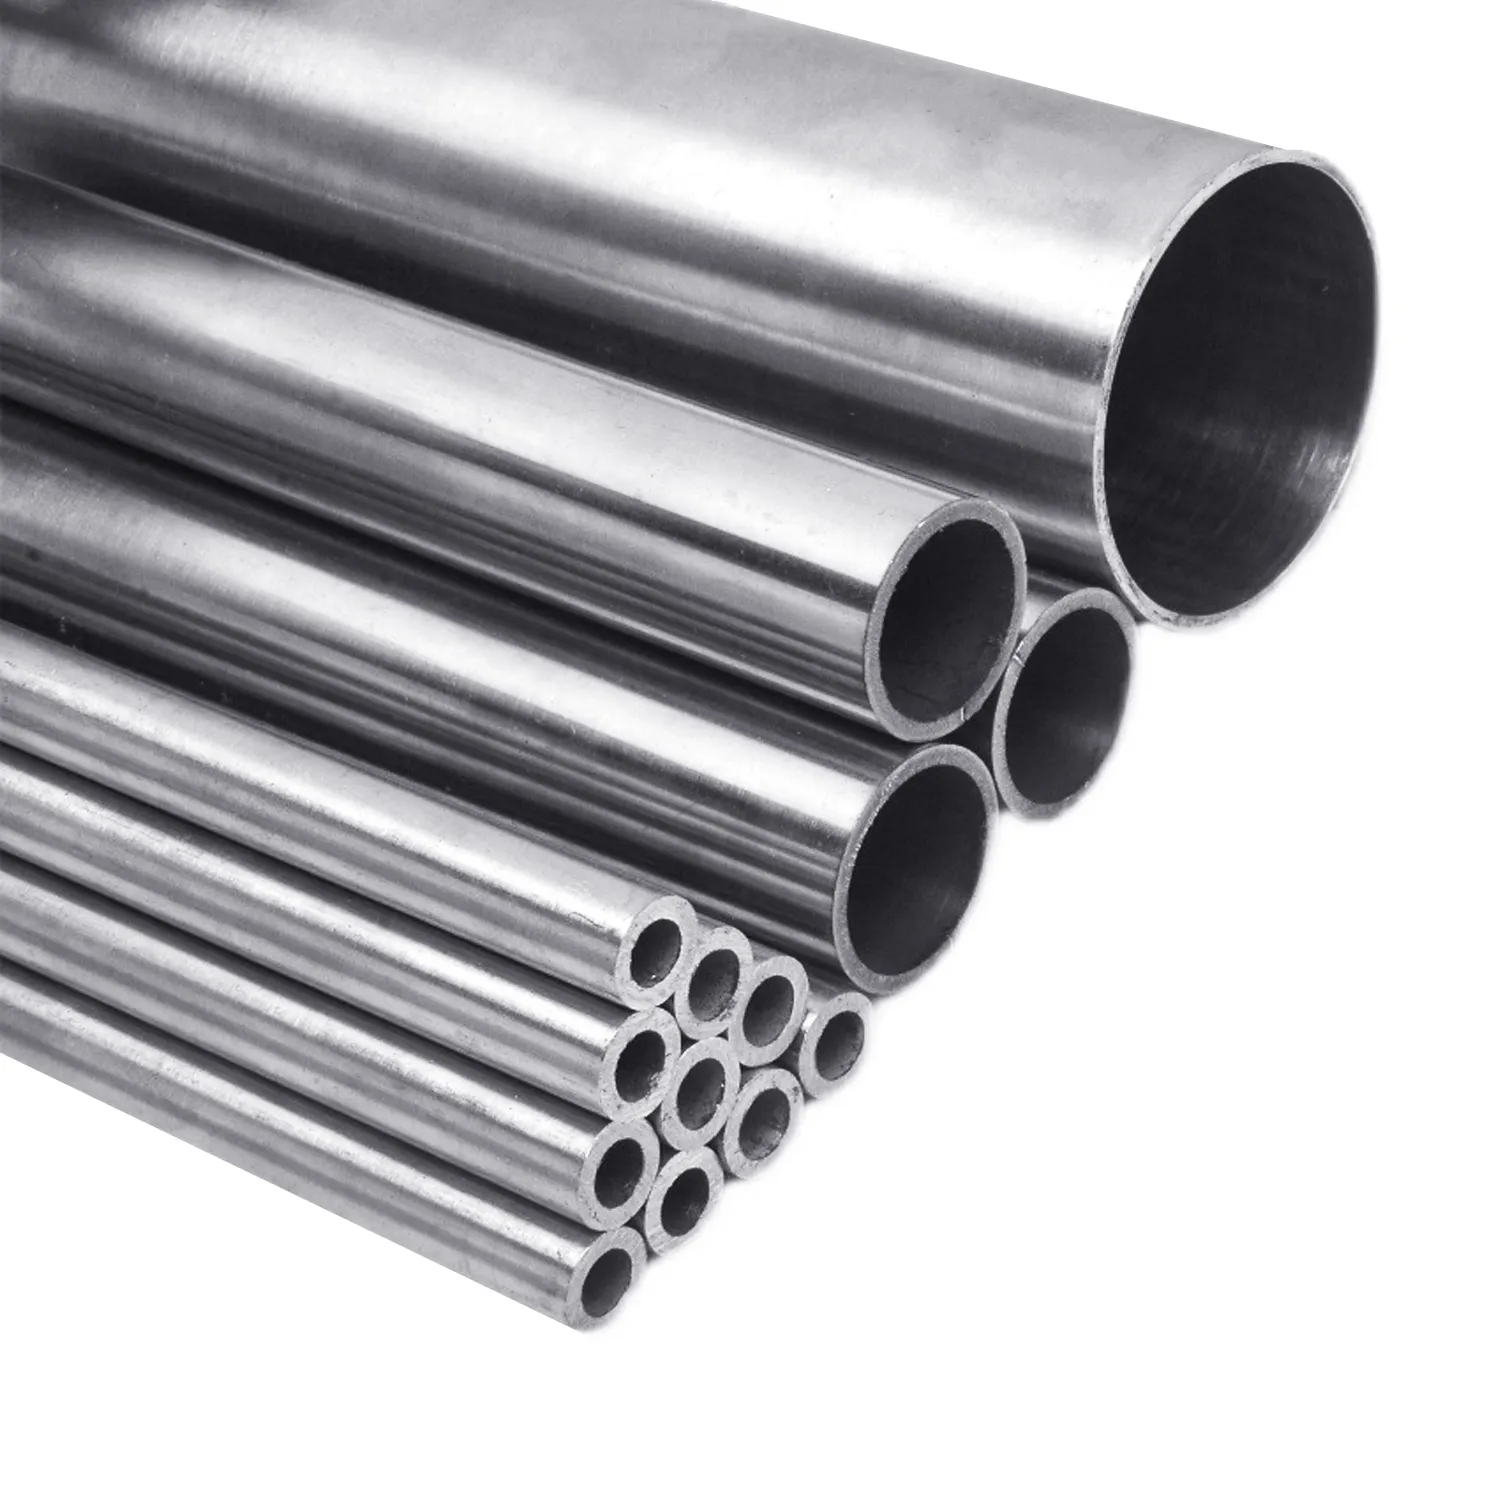 Vente chaude en acier inoxydable 430 tuyaux en acier inoxydable 9mm épaisseur tubes muraux